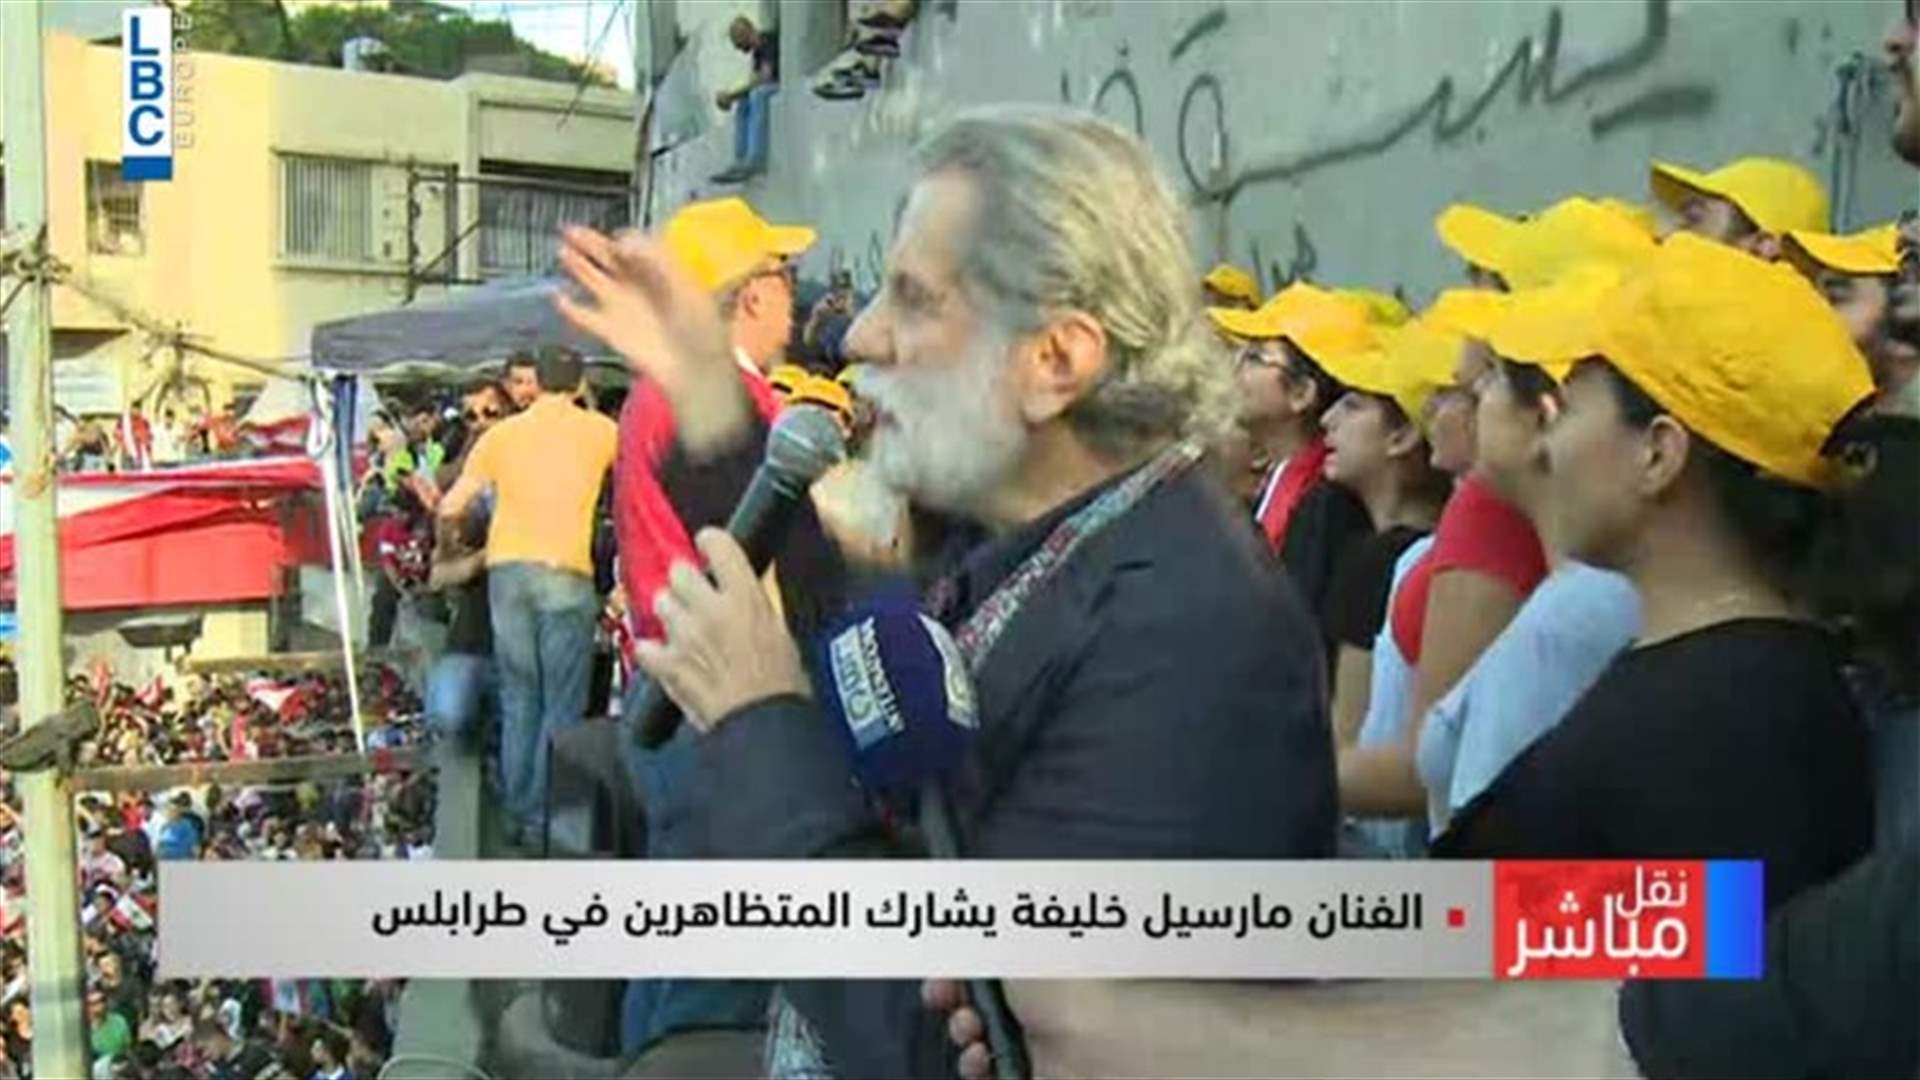 مارسيل خليفة يثور مع المتظاهرين في طرابلس... &quot;دائم الثورة يا قلبي&quot; (فيديو)